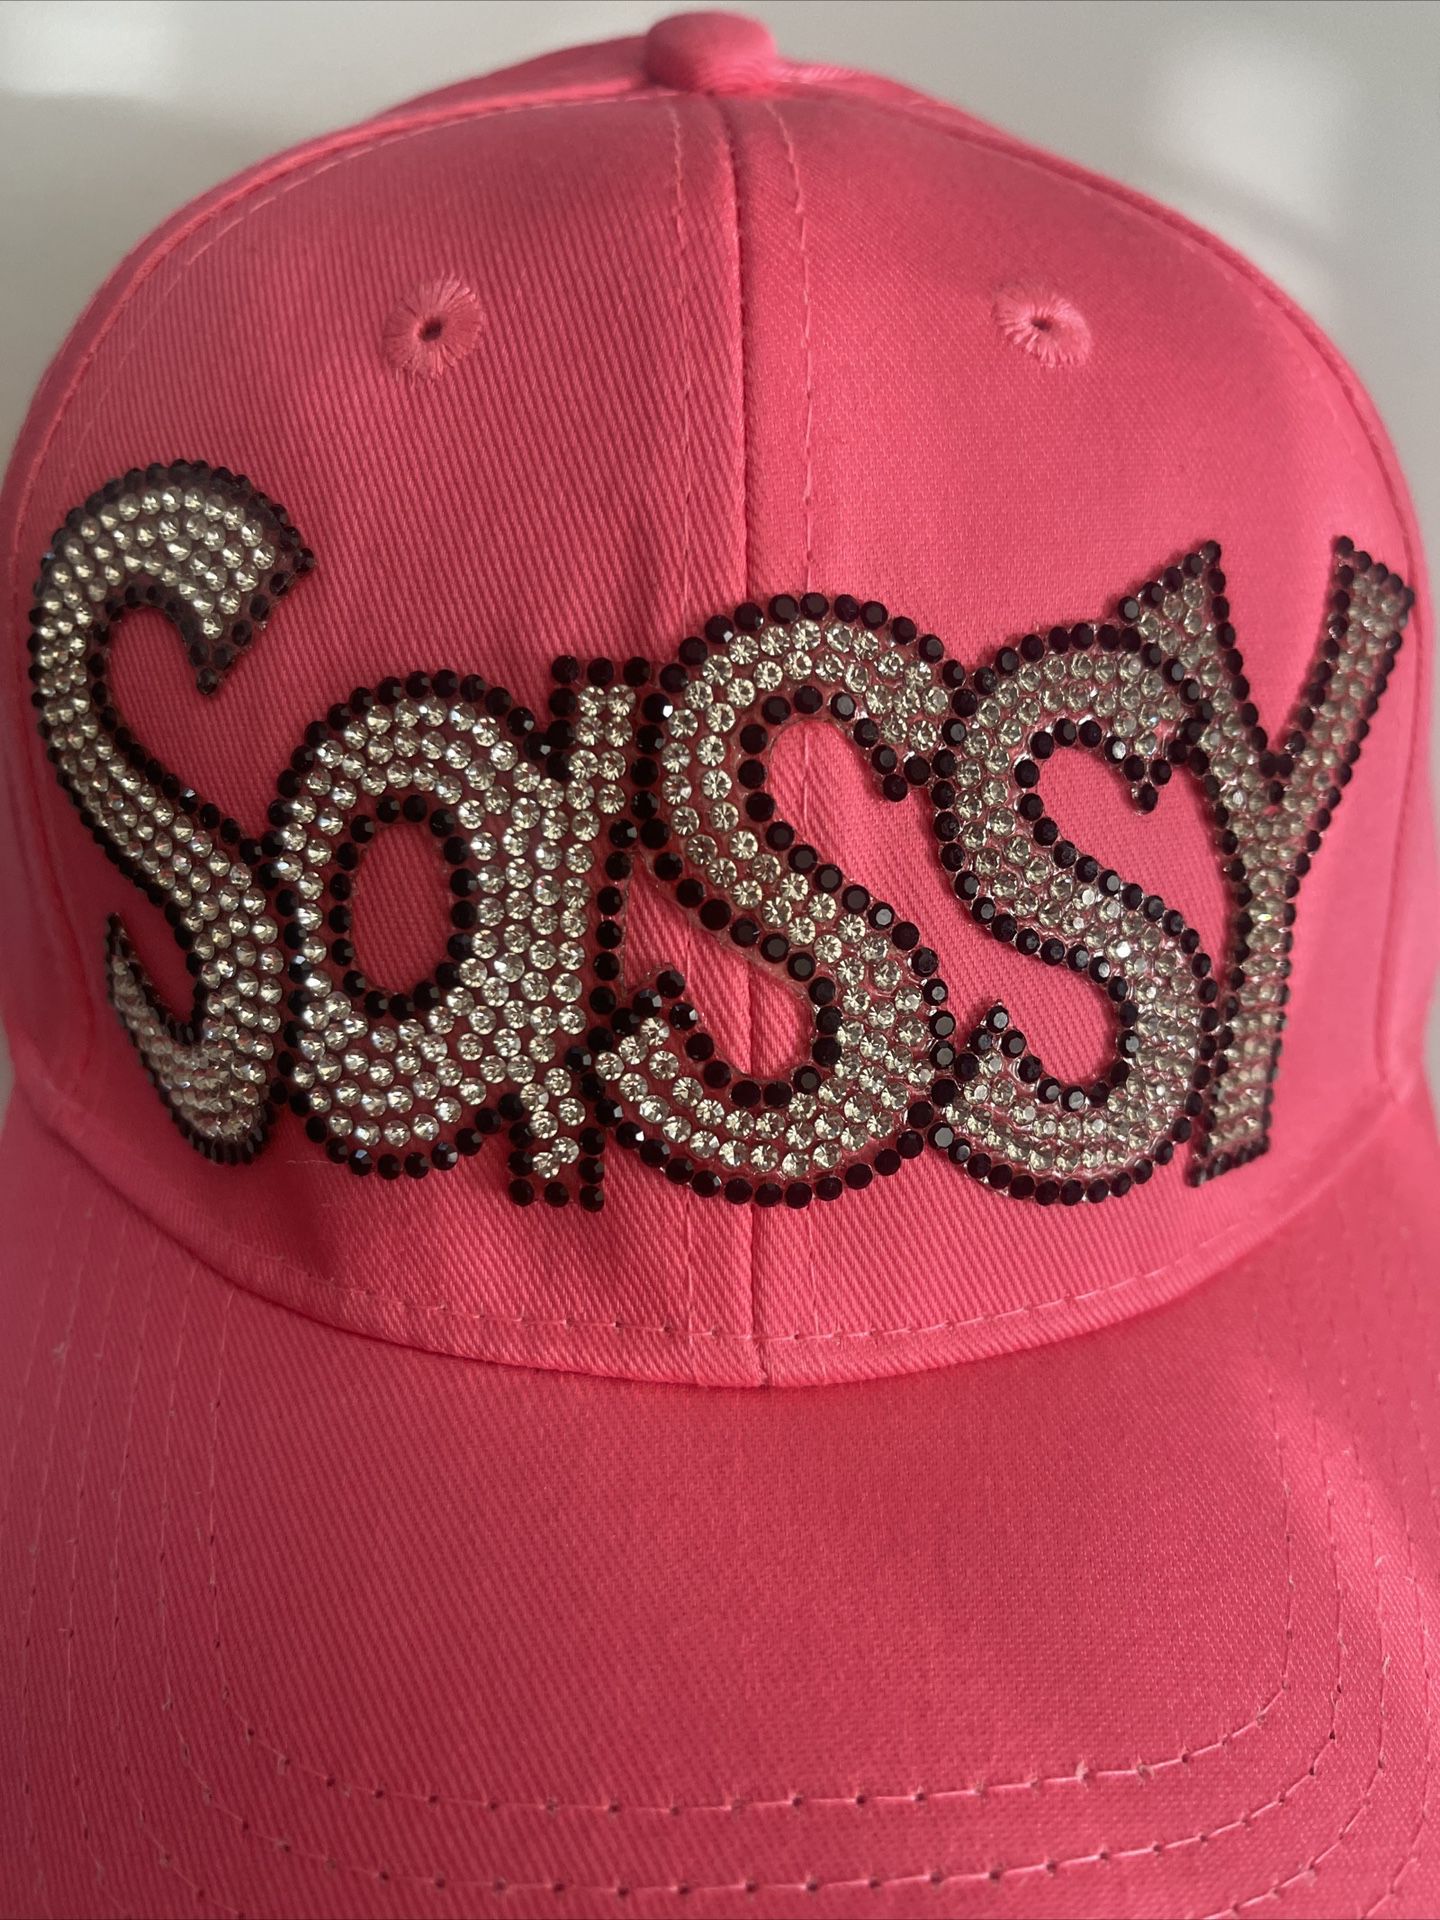 BLING BLING Blk & Diamond “Sassy” Pink Baseball Cap/Hat